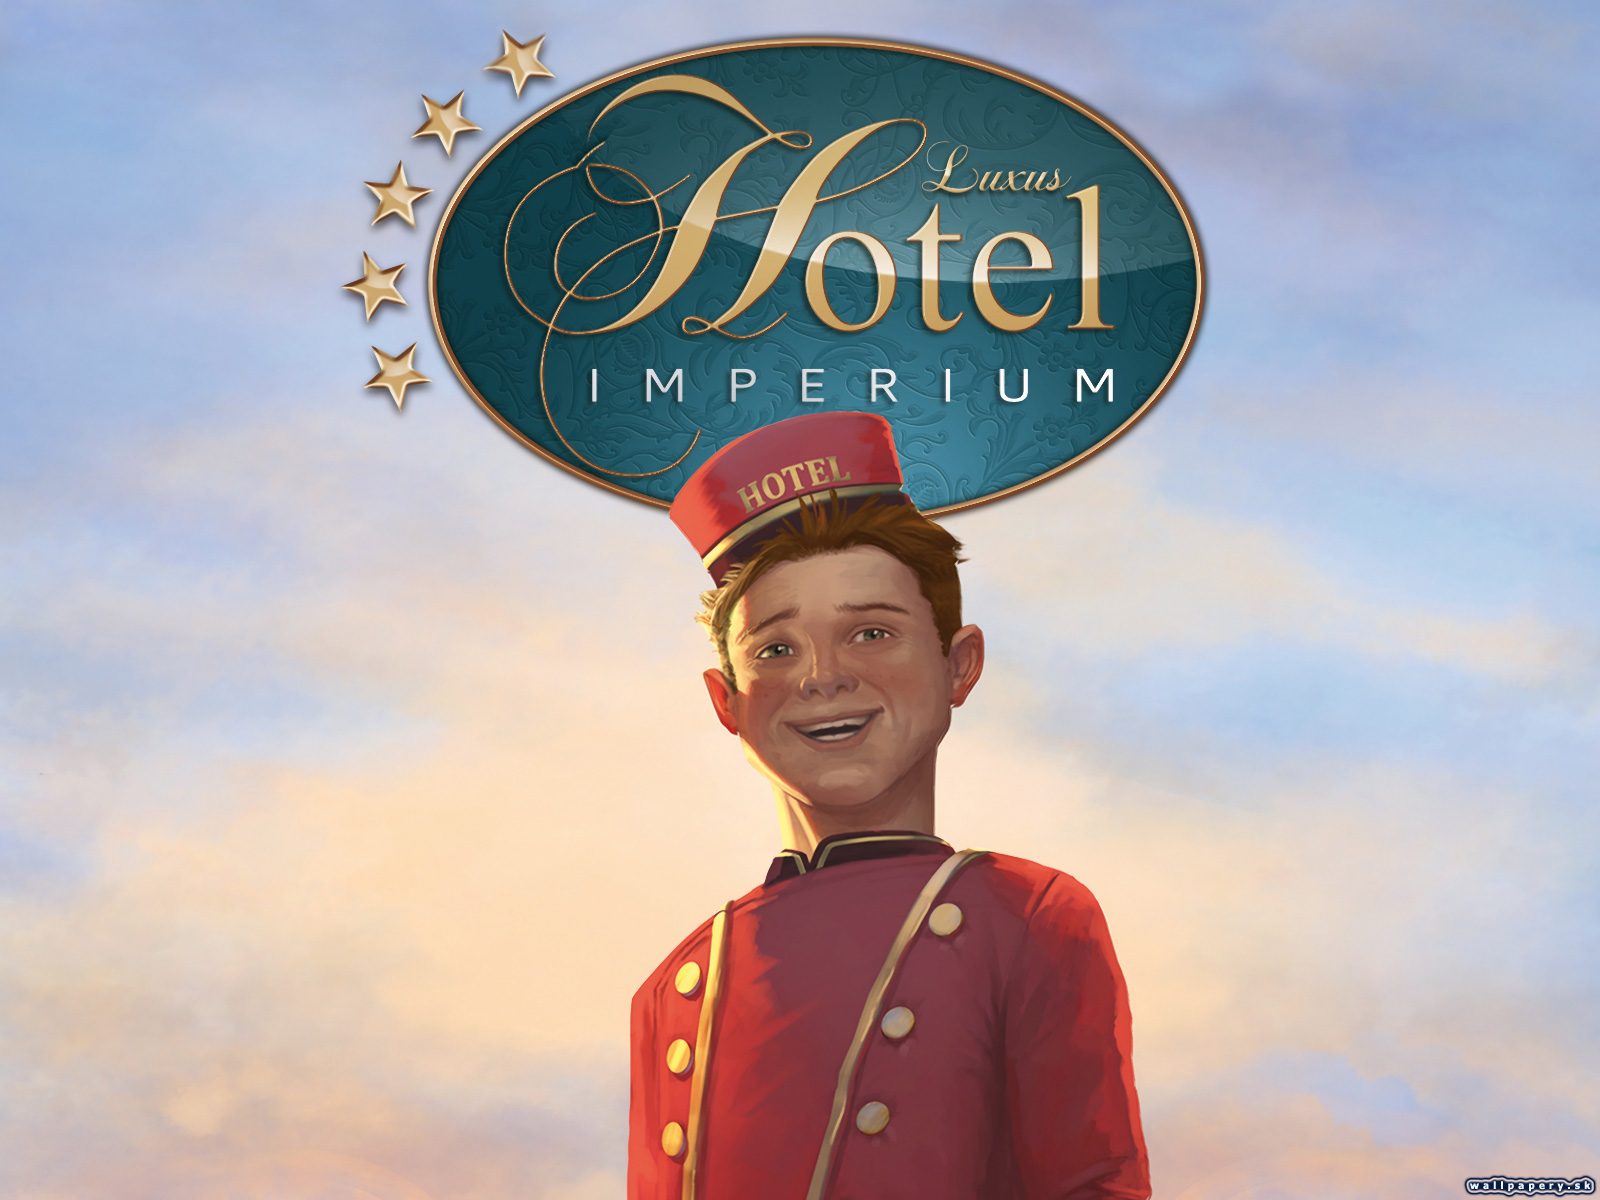 Luxus Hotel Imperium - wallpaper 1